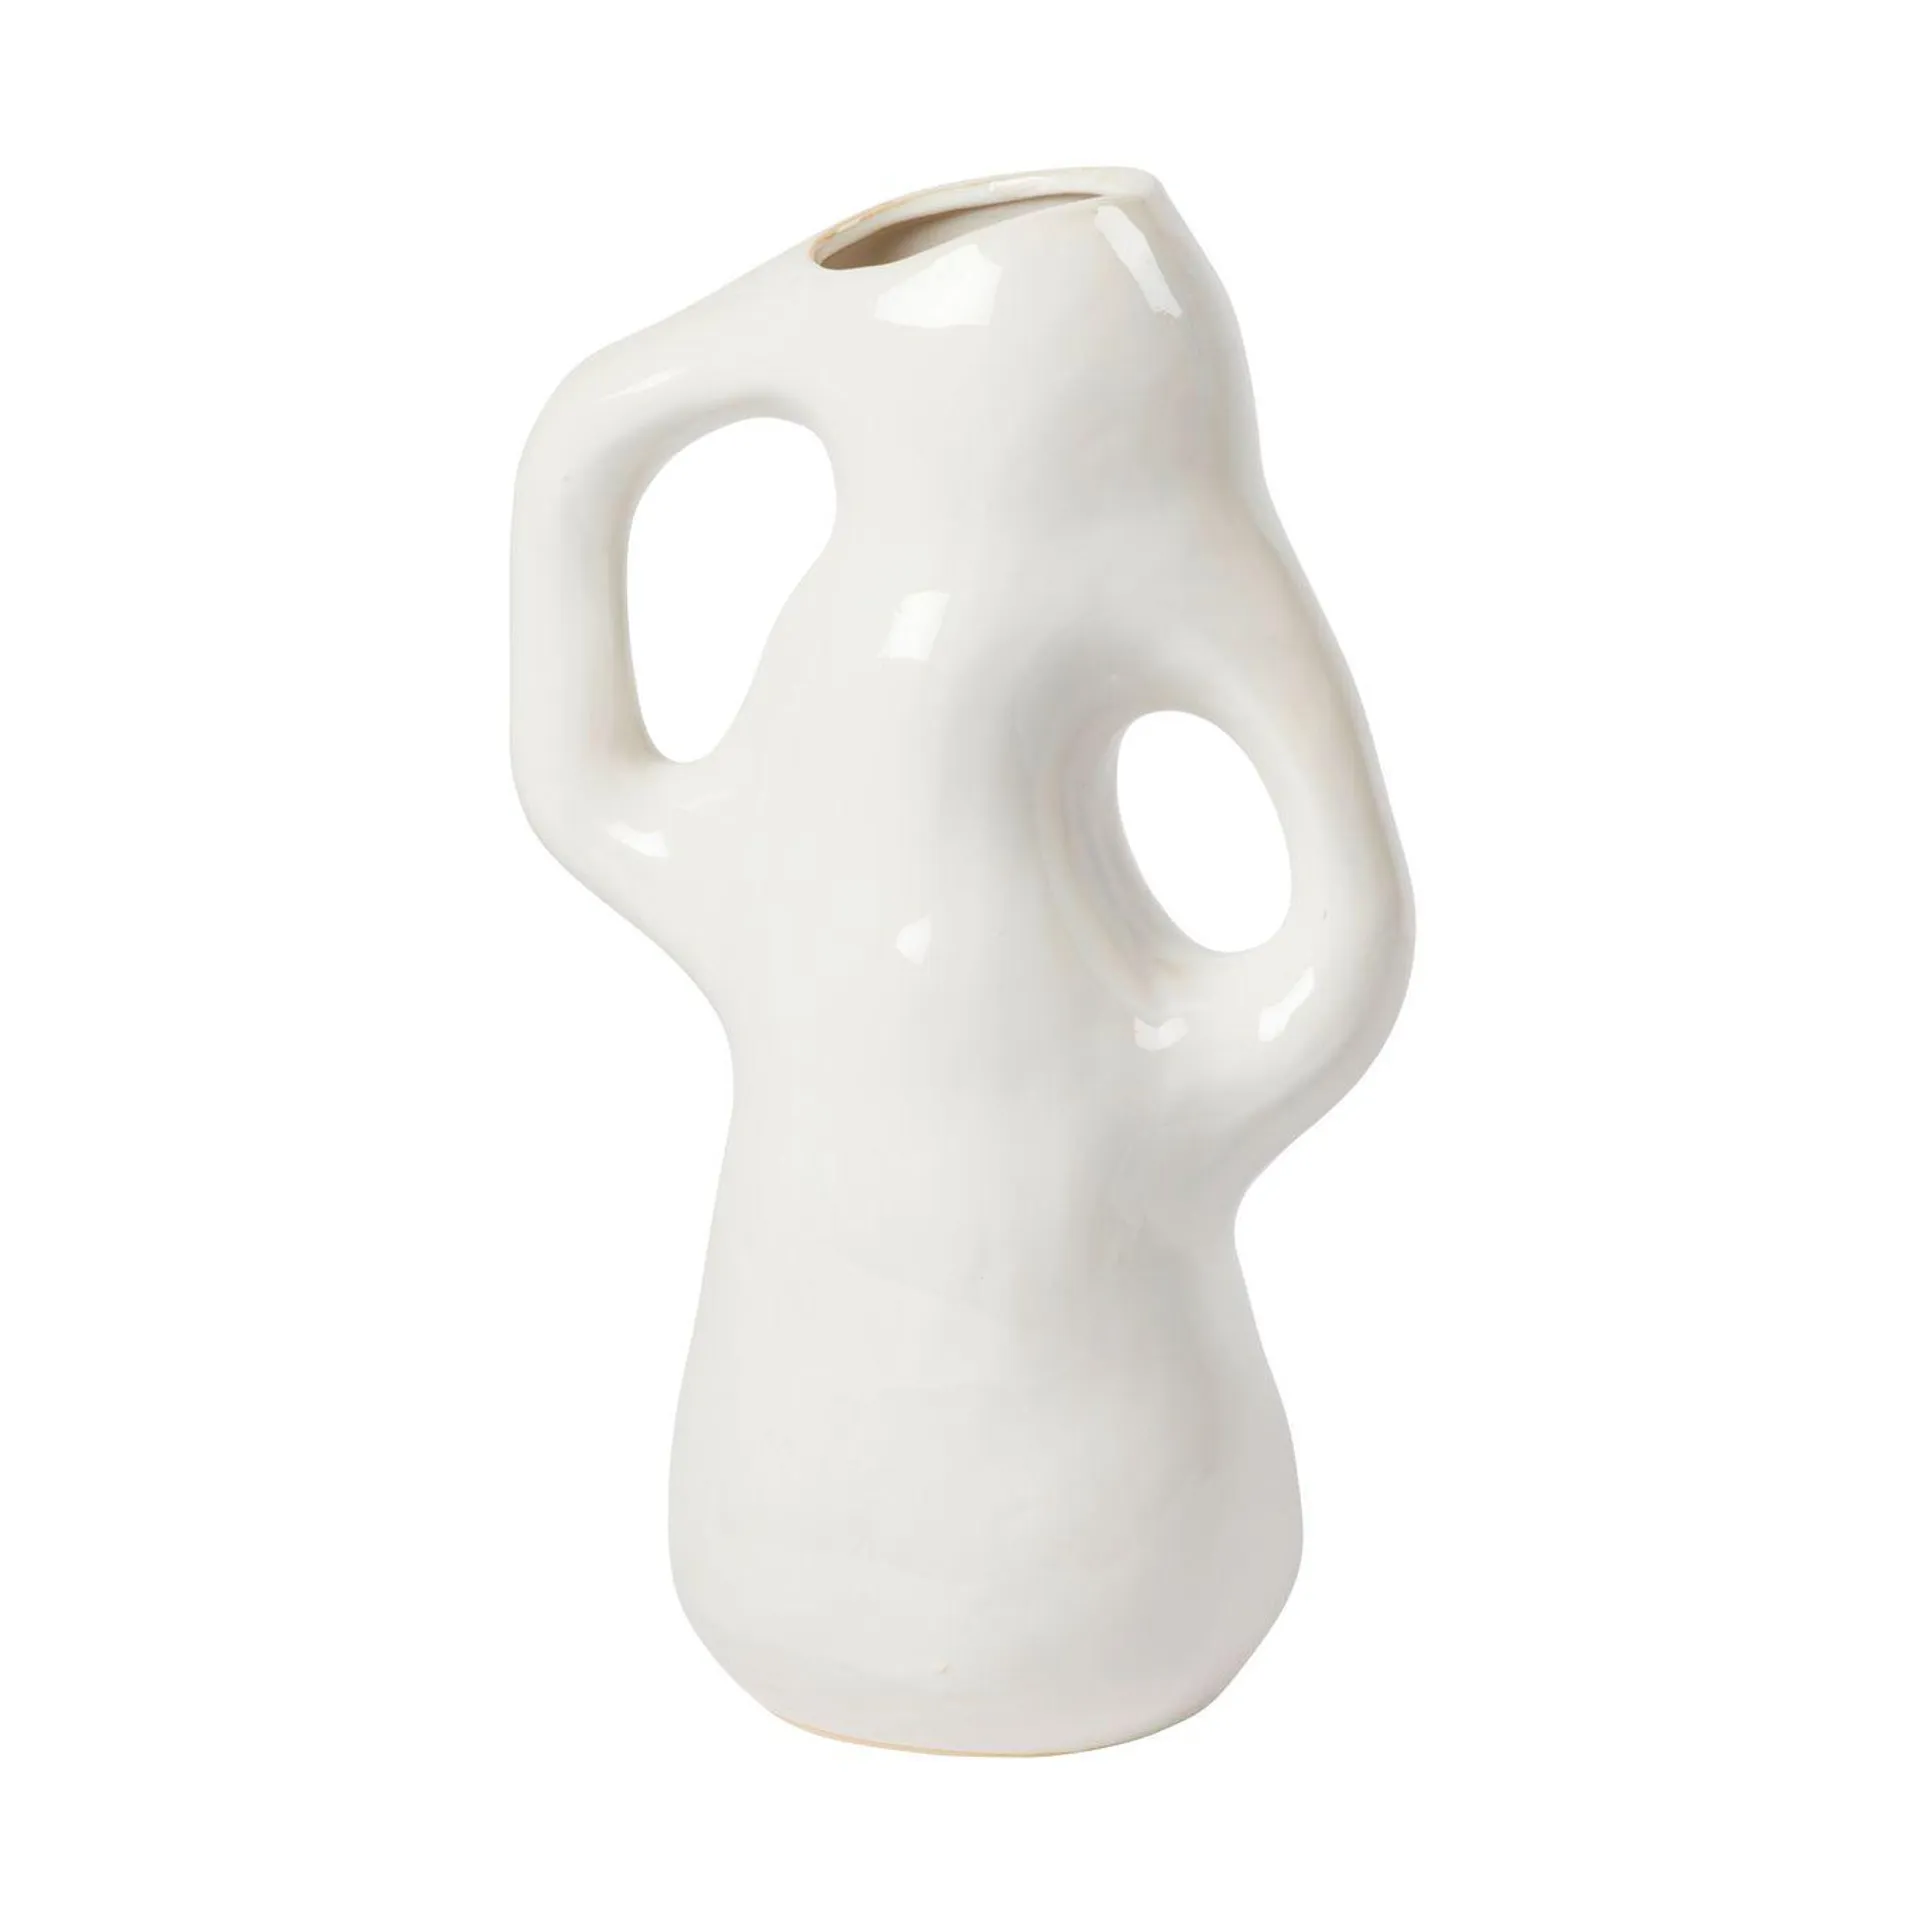 Isolde vase 35 cm